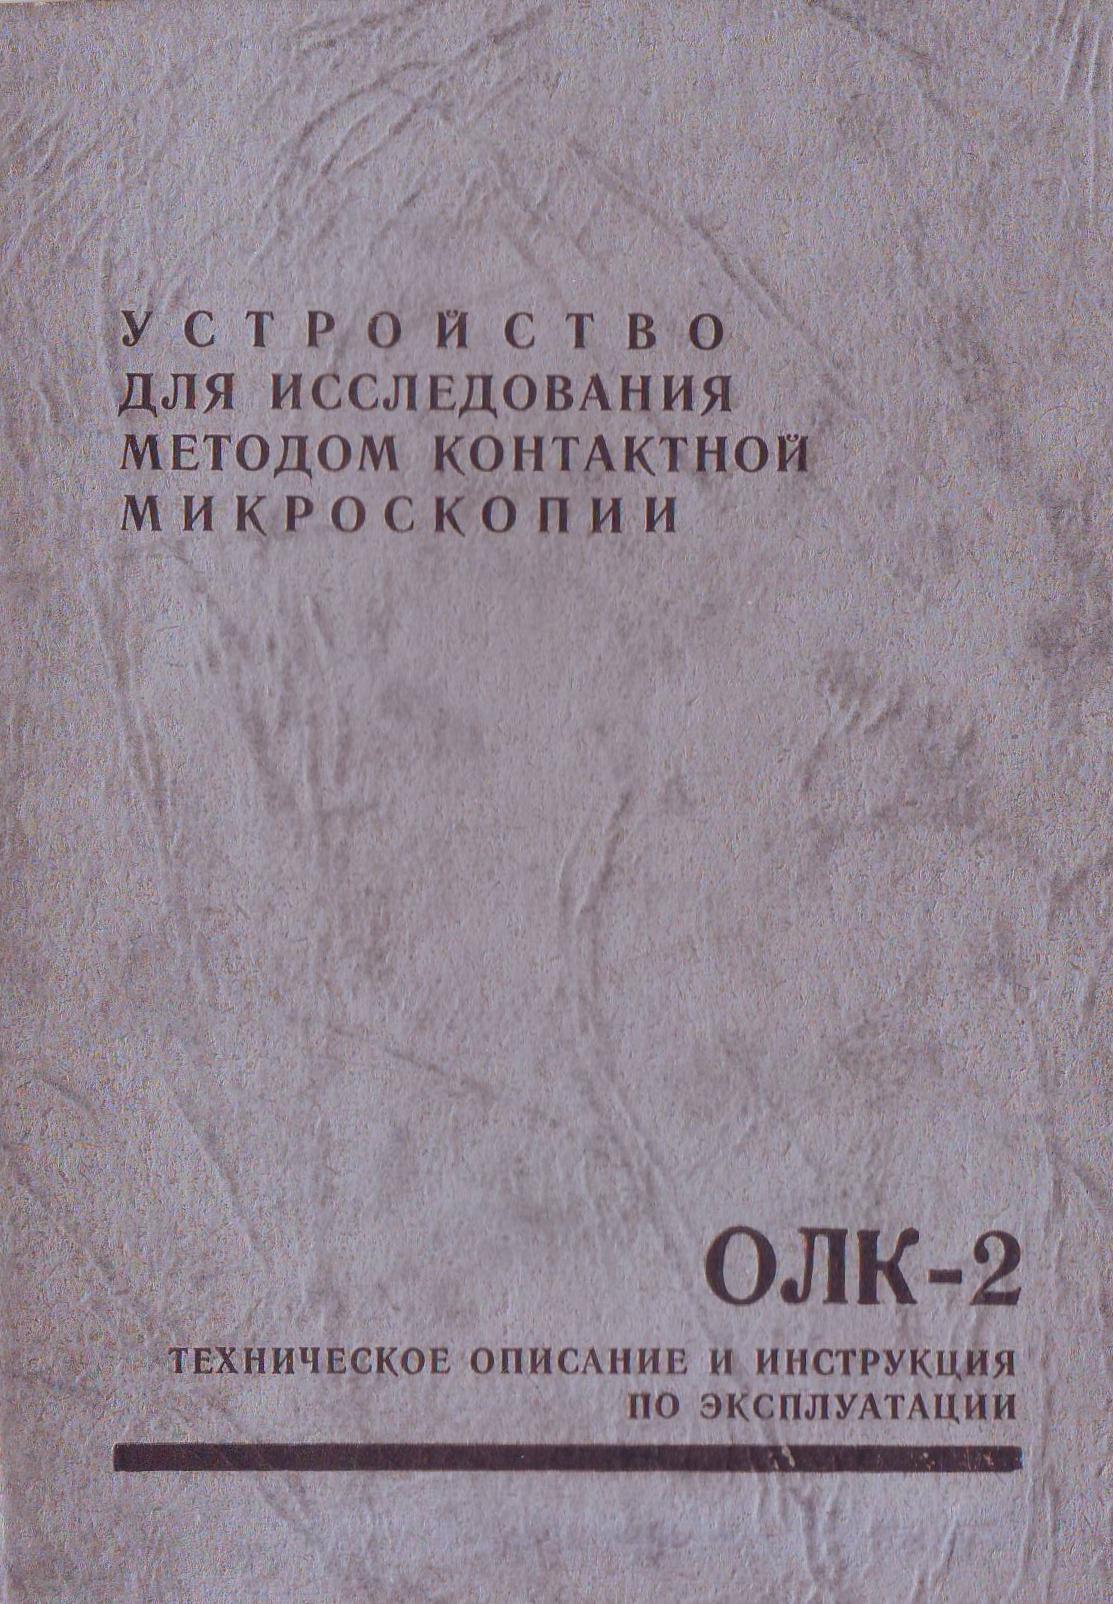 олк-2 инструкция